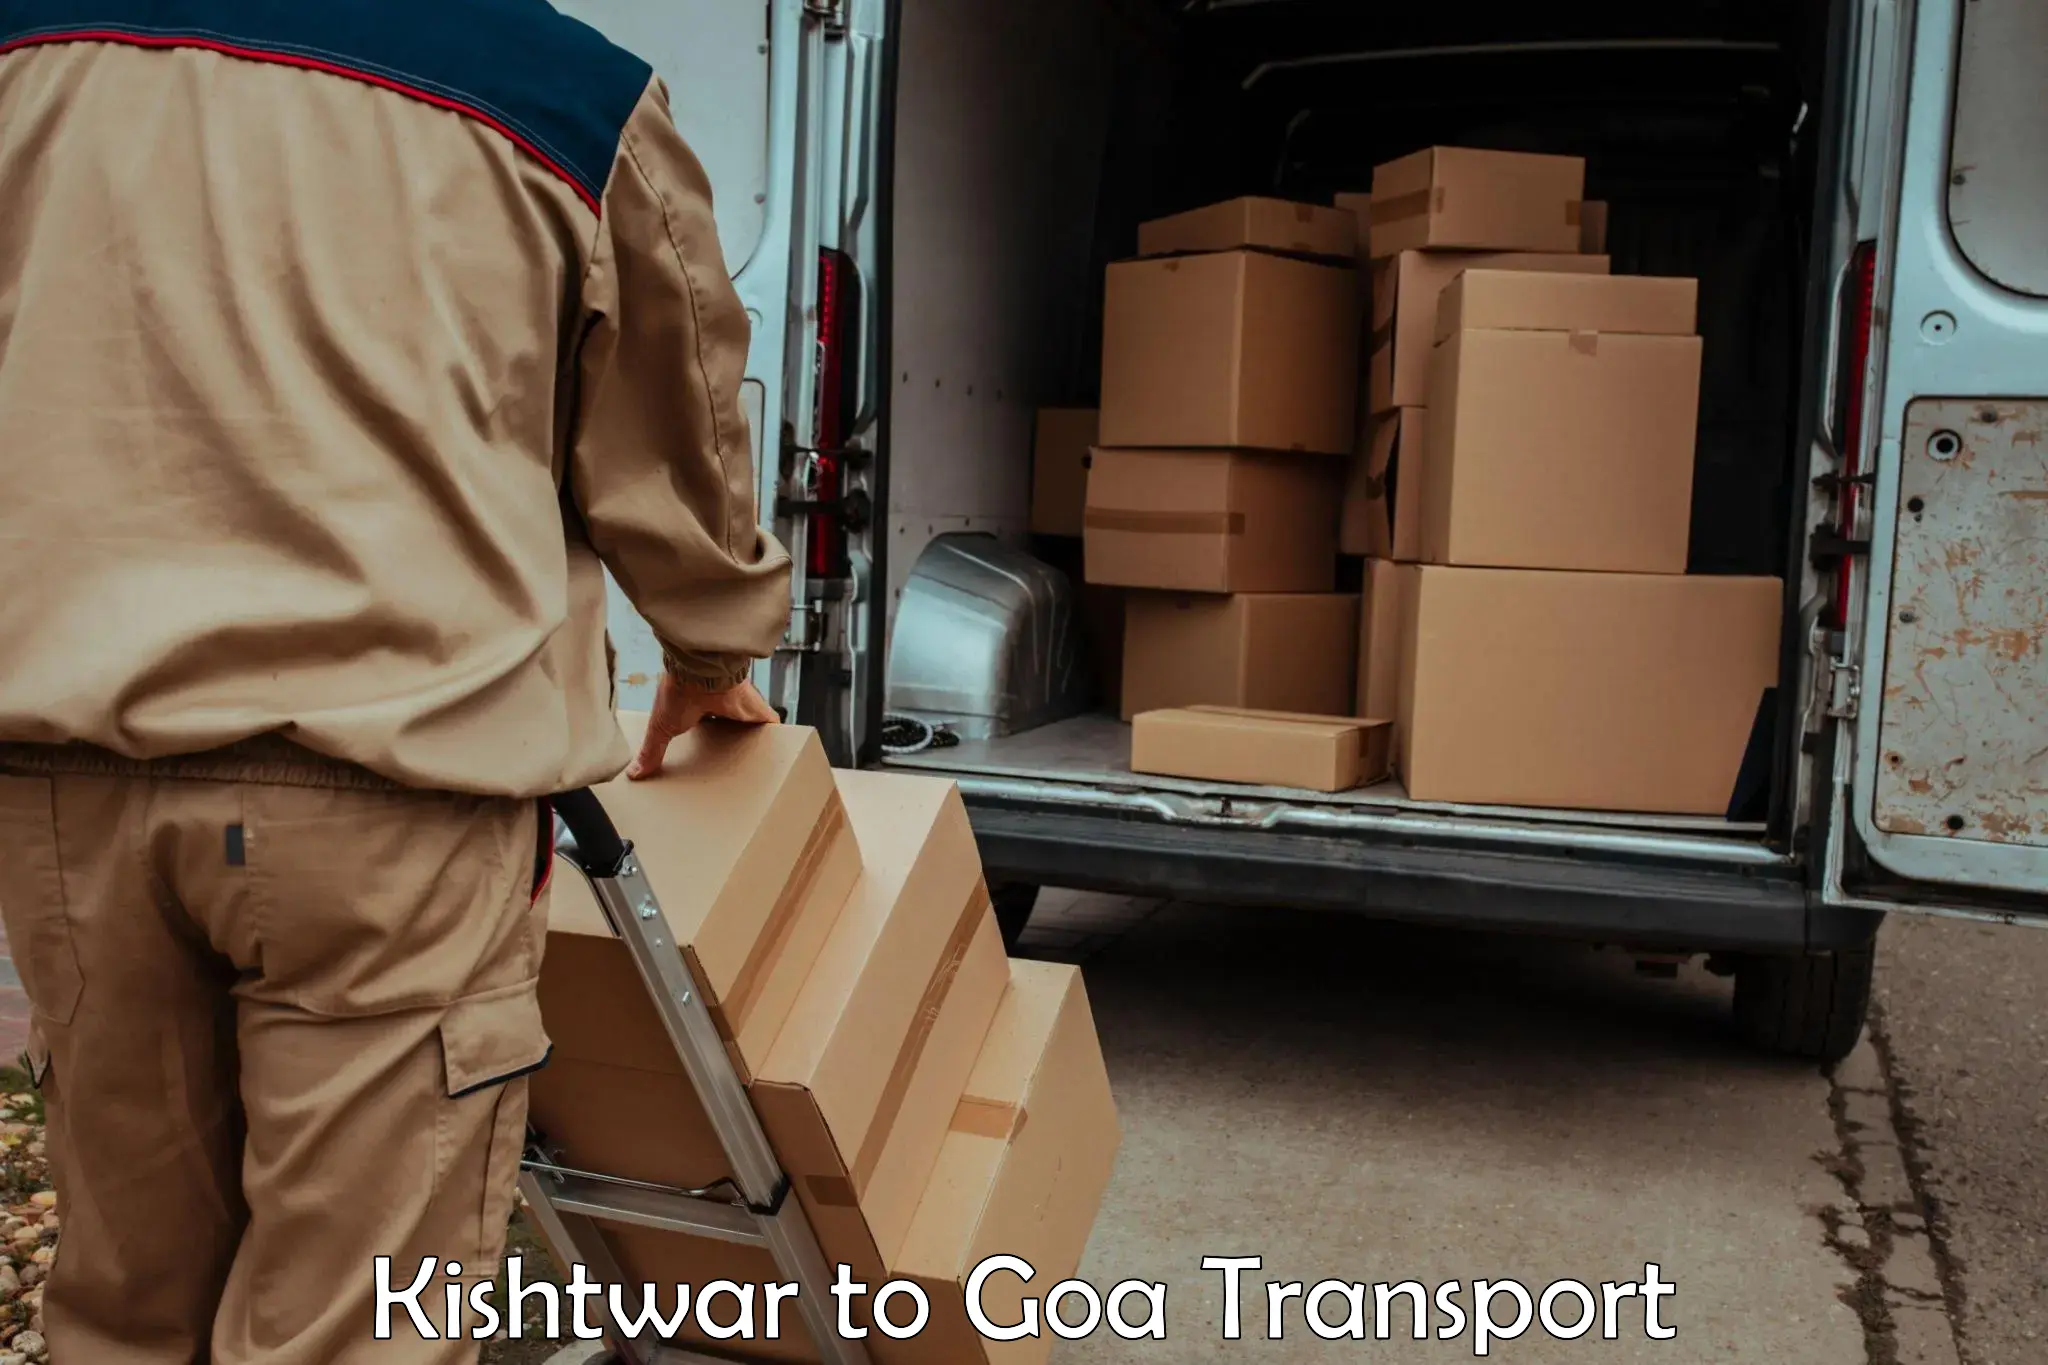 Daily parcel service transport in Kishtwar to Vasco da Gama